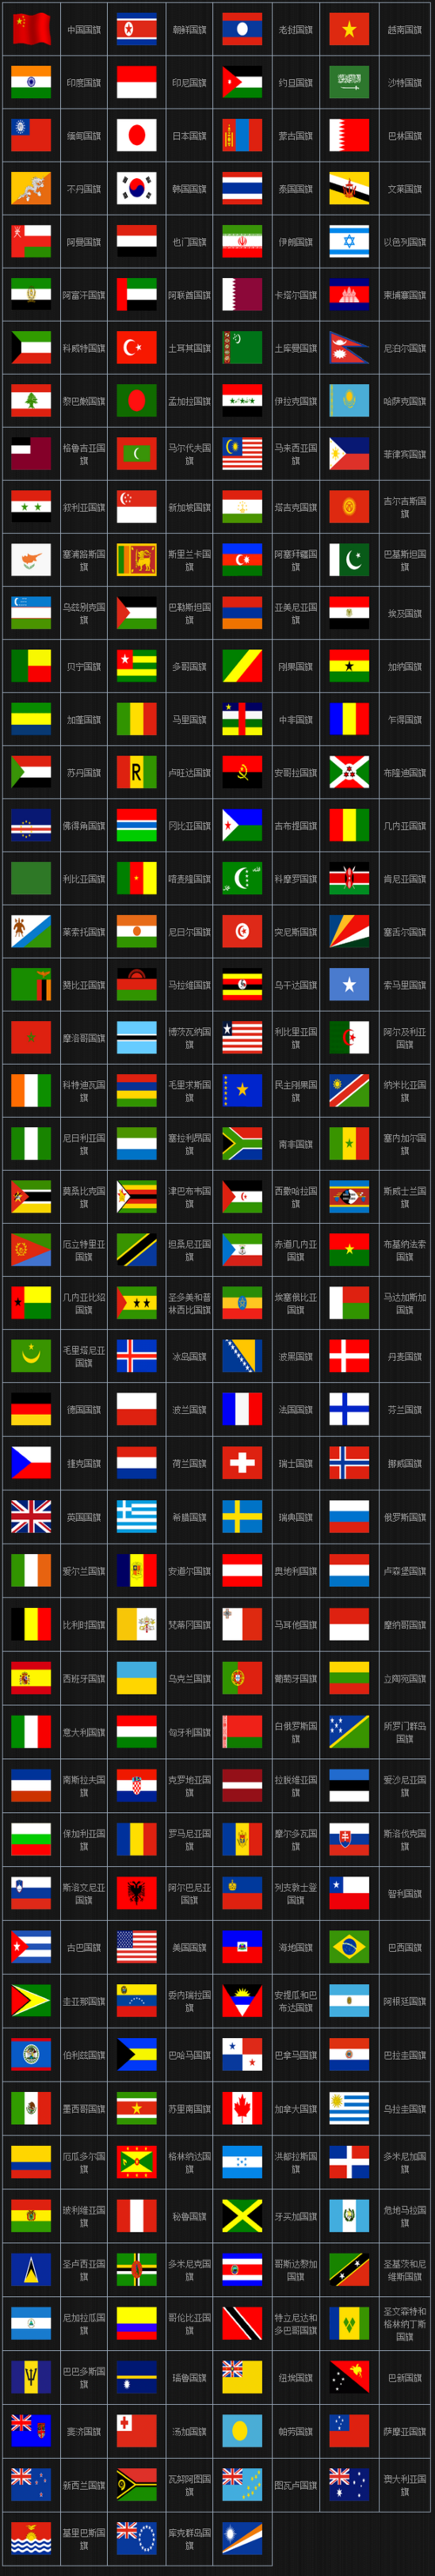 世界各国国旗图片及名称